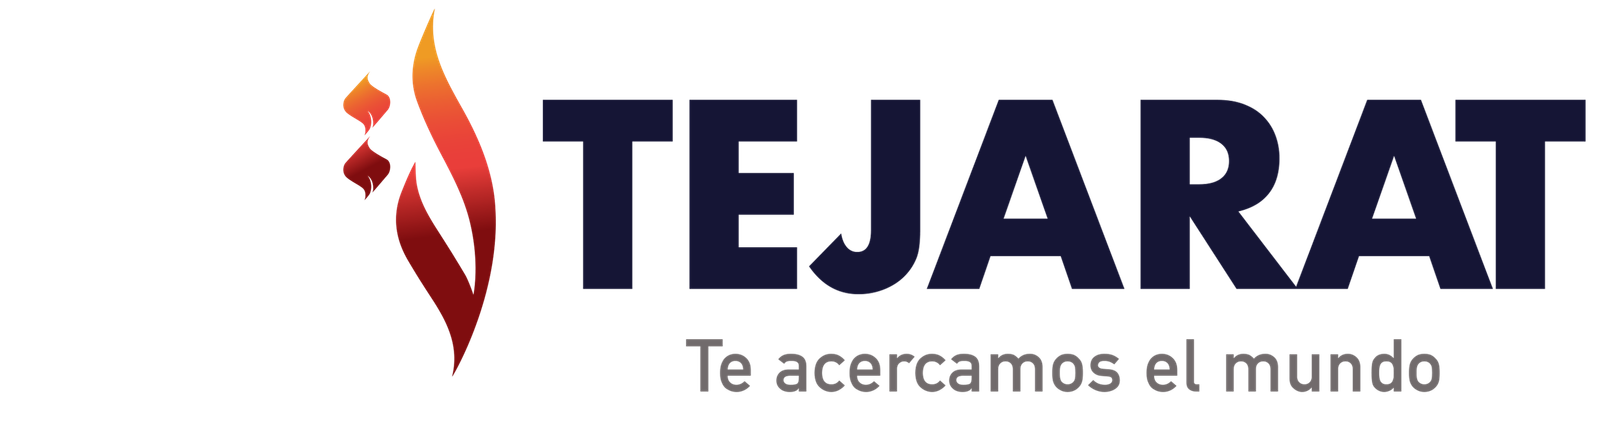 Tejarat Colombia